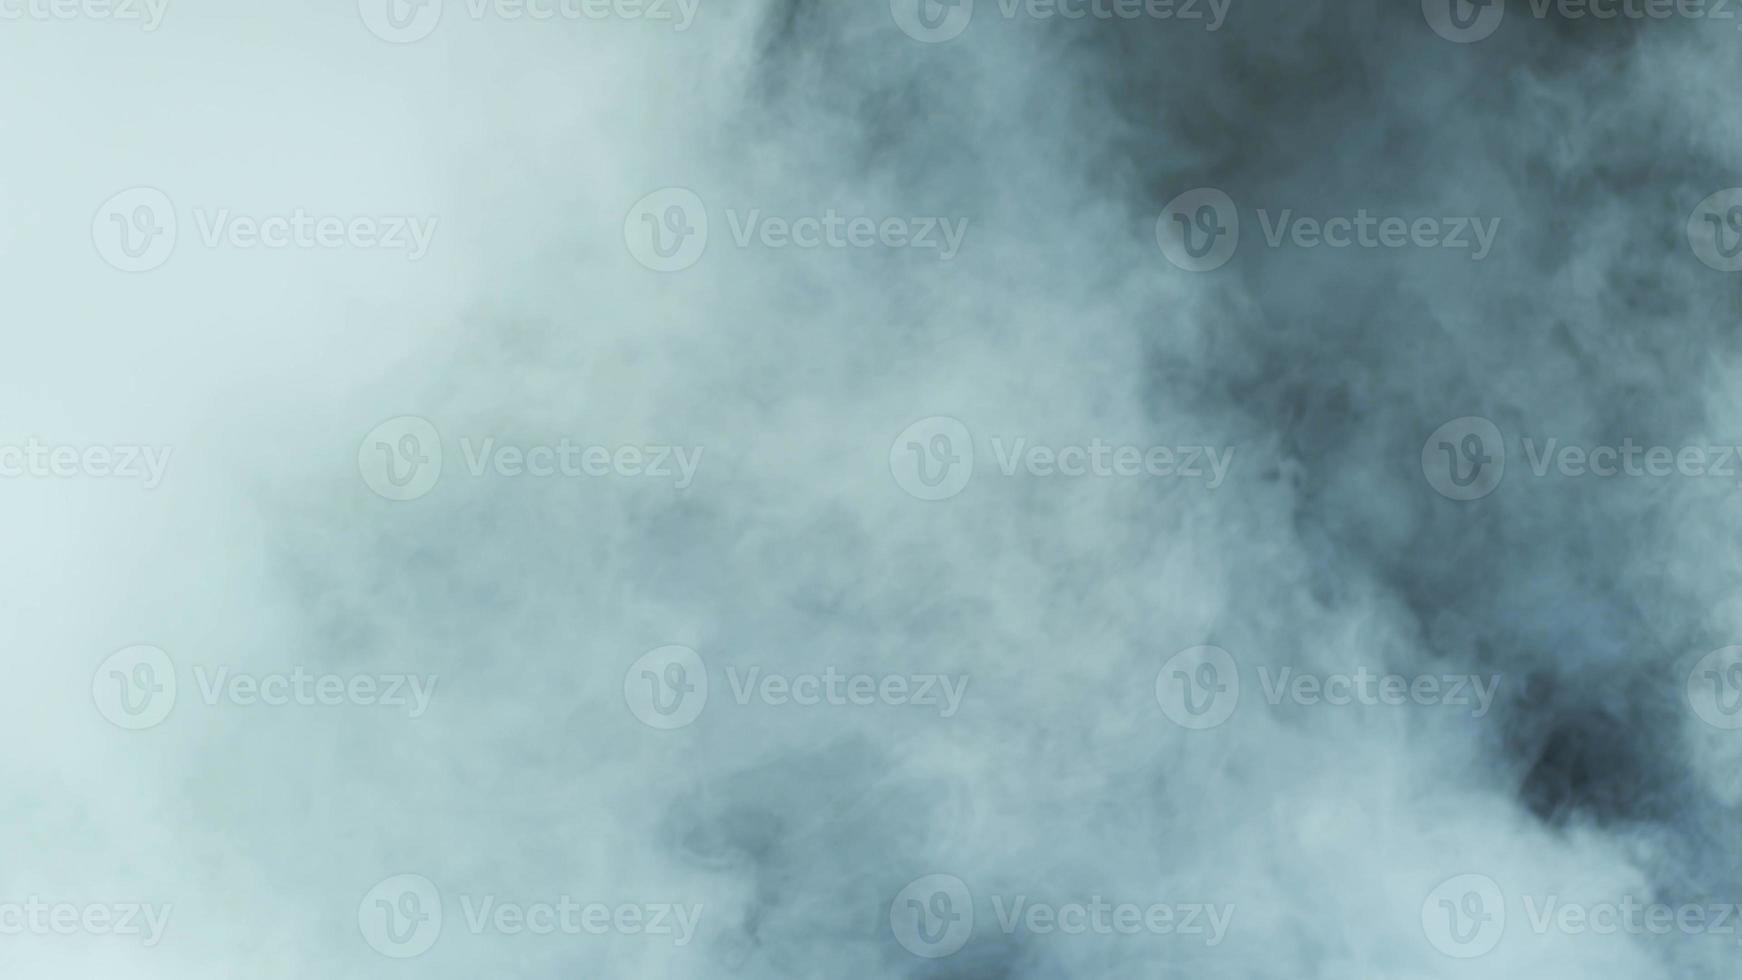 foto realista de nuvens de fumaça de gelo seco para diferentes projetos e etc.